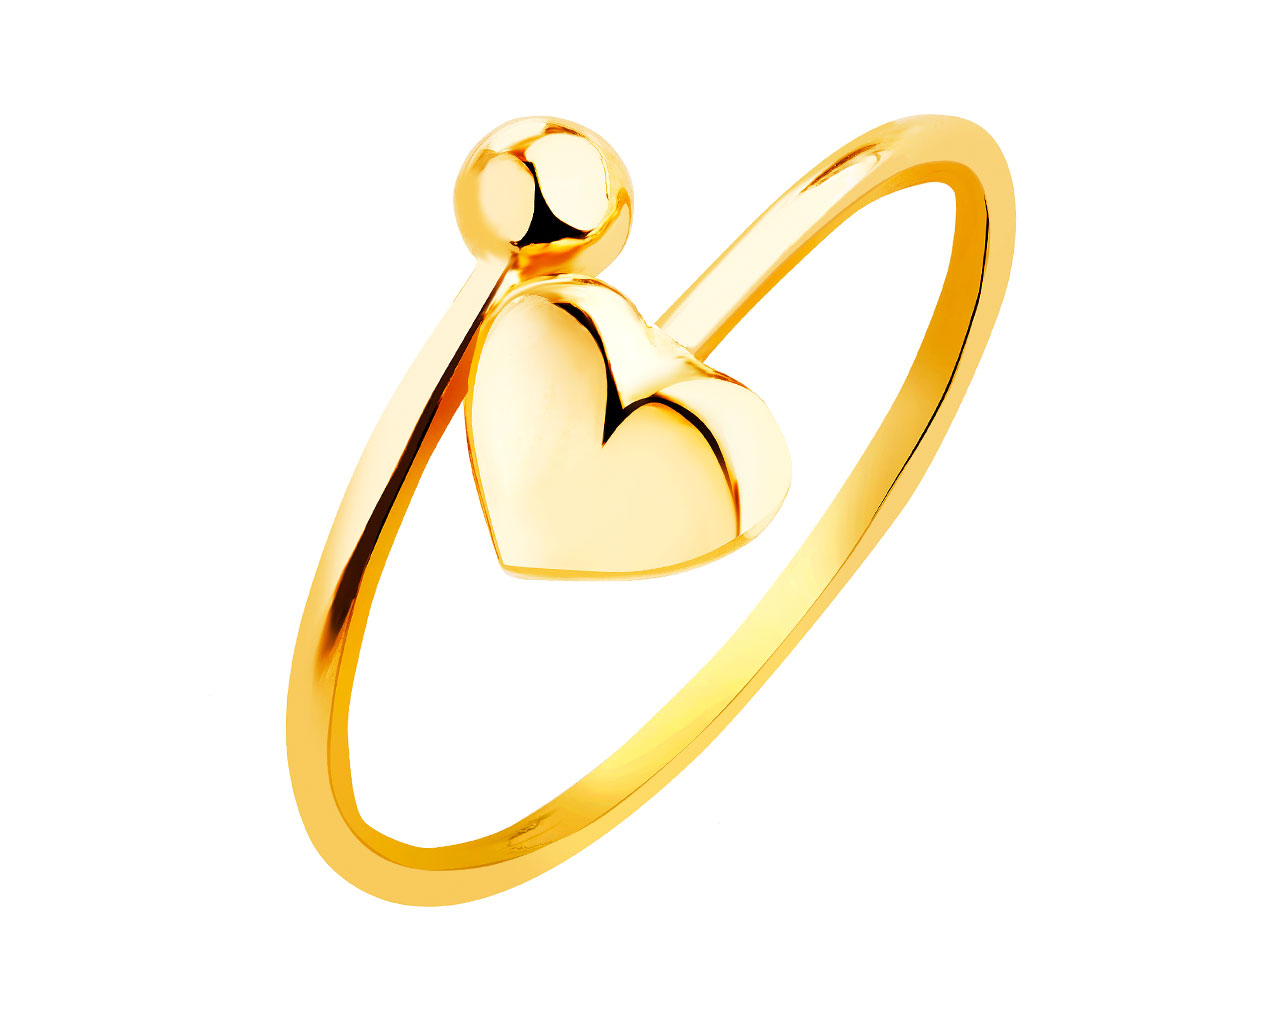 Złoty pierścionek - serce 